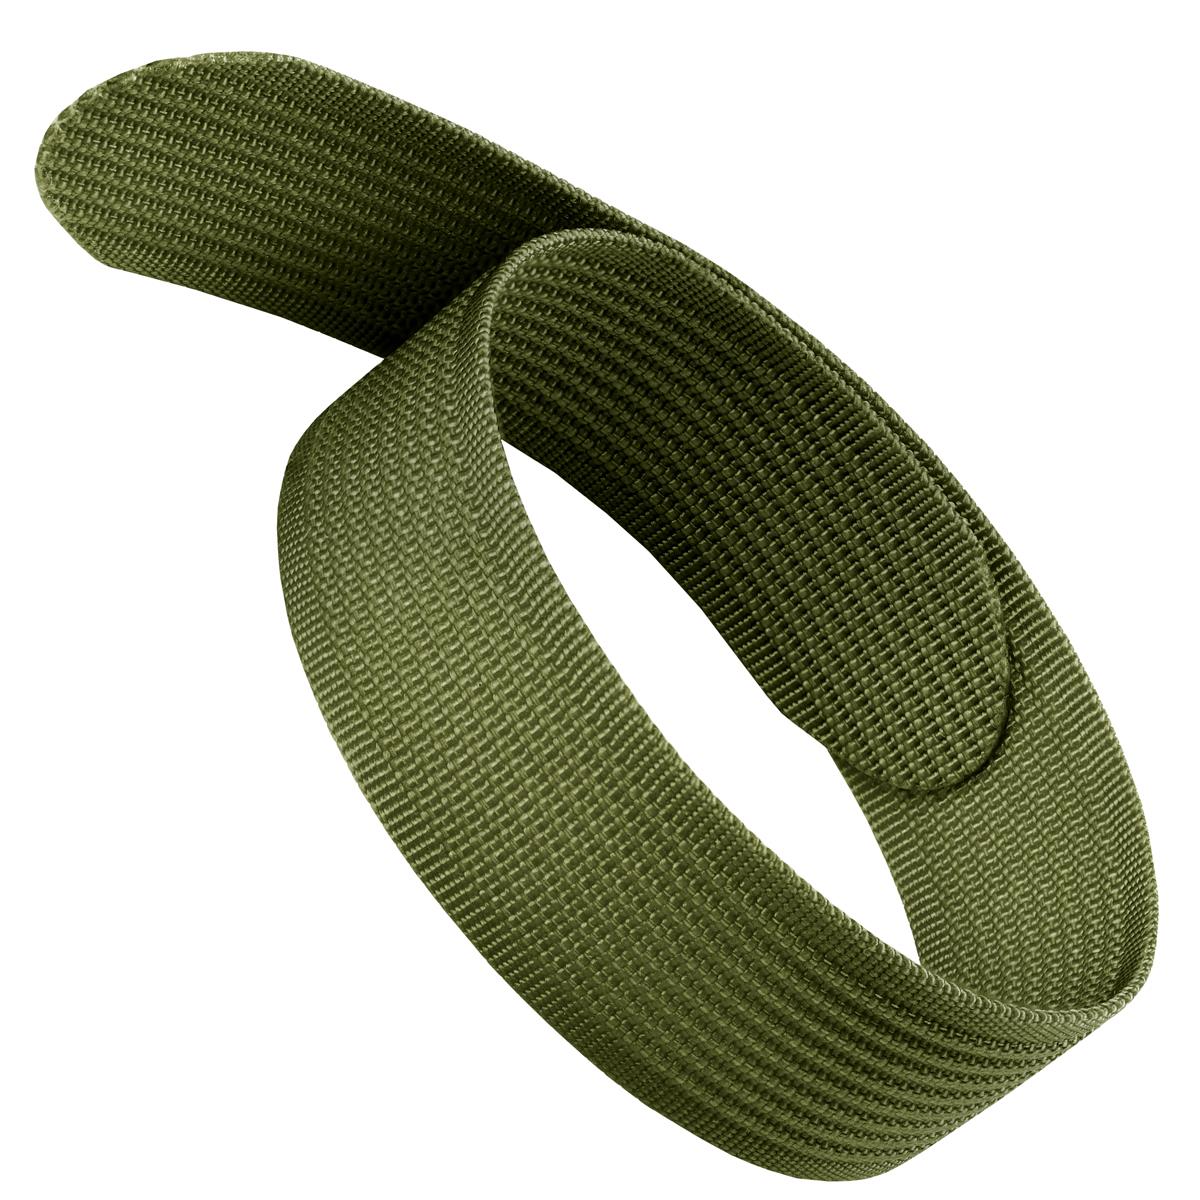 24mm Drab Olive Nylon Hook N' Loop Watch Band - Carbon